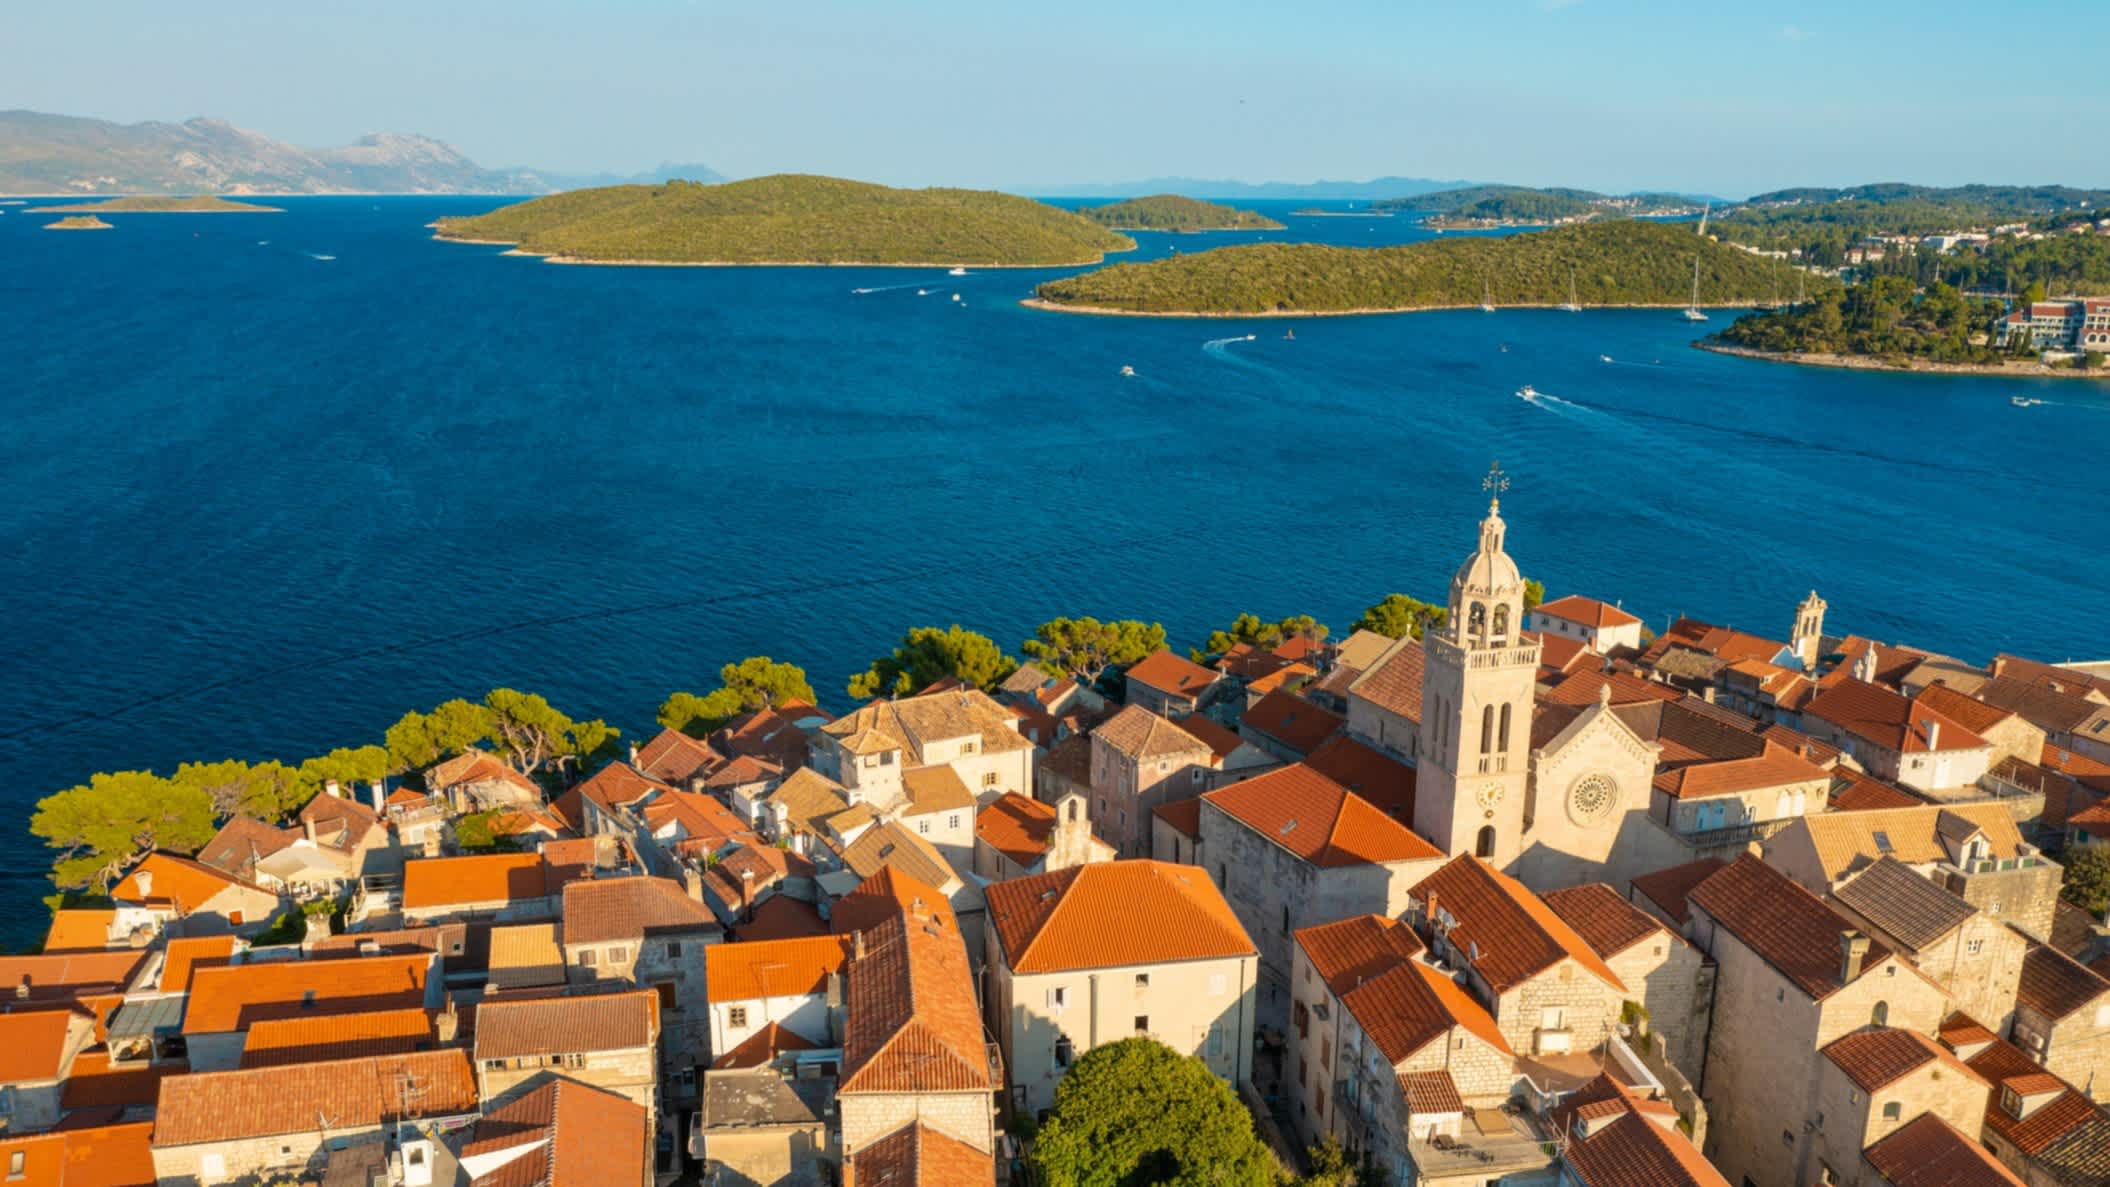 Luftaufnahme der Stadt Korcula auf der Insel Korcula, Adria, Kroatien